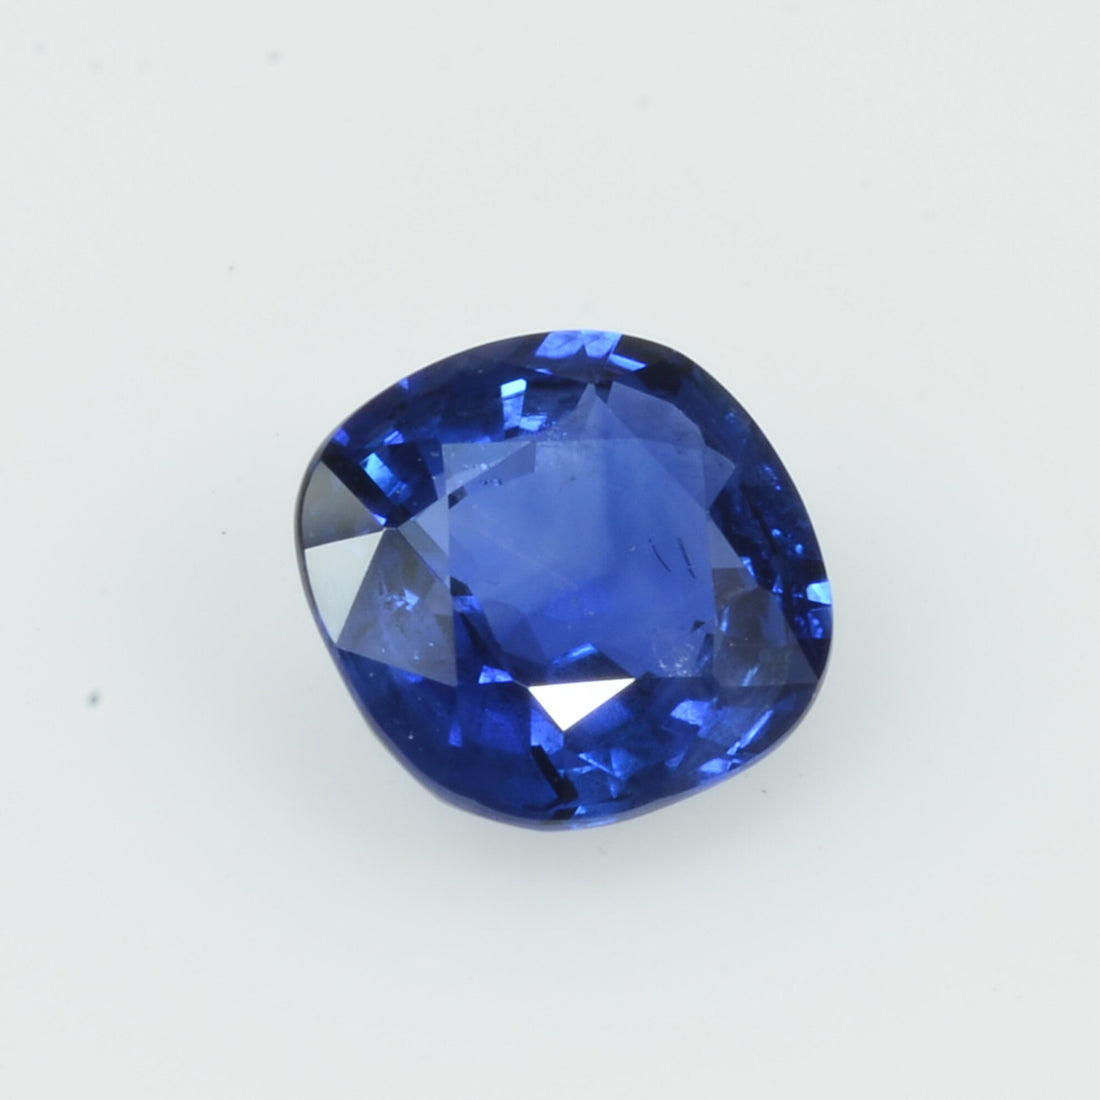 1.00 cts Natural Blue Sapphire Loose Gemstone Cushion Cut